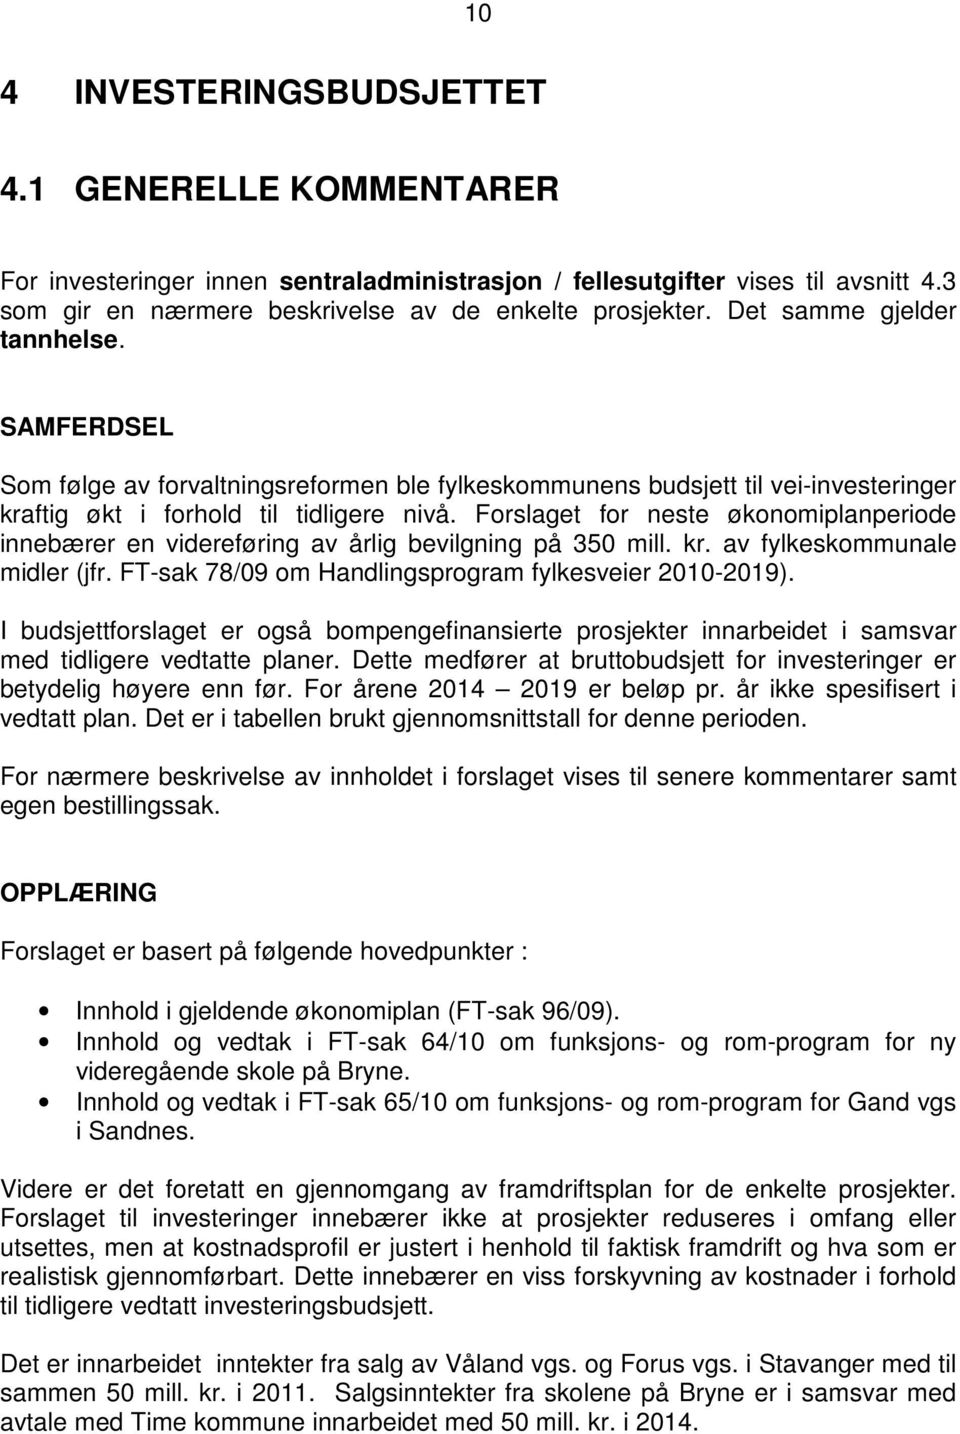 Forslaget for neste økonomiplanperiode innebærer en videreføring av årlig bevilgning på 350 mill. kr. av fylkeskommunale midler (jfr. FT-sak 78/09 om Handlingsprogram fylkesveier 2010-2019).